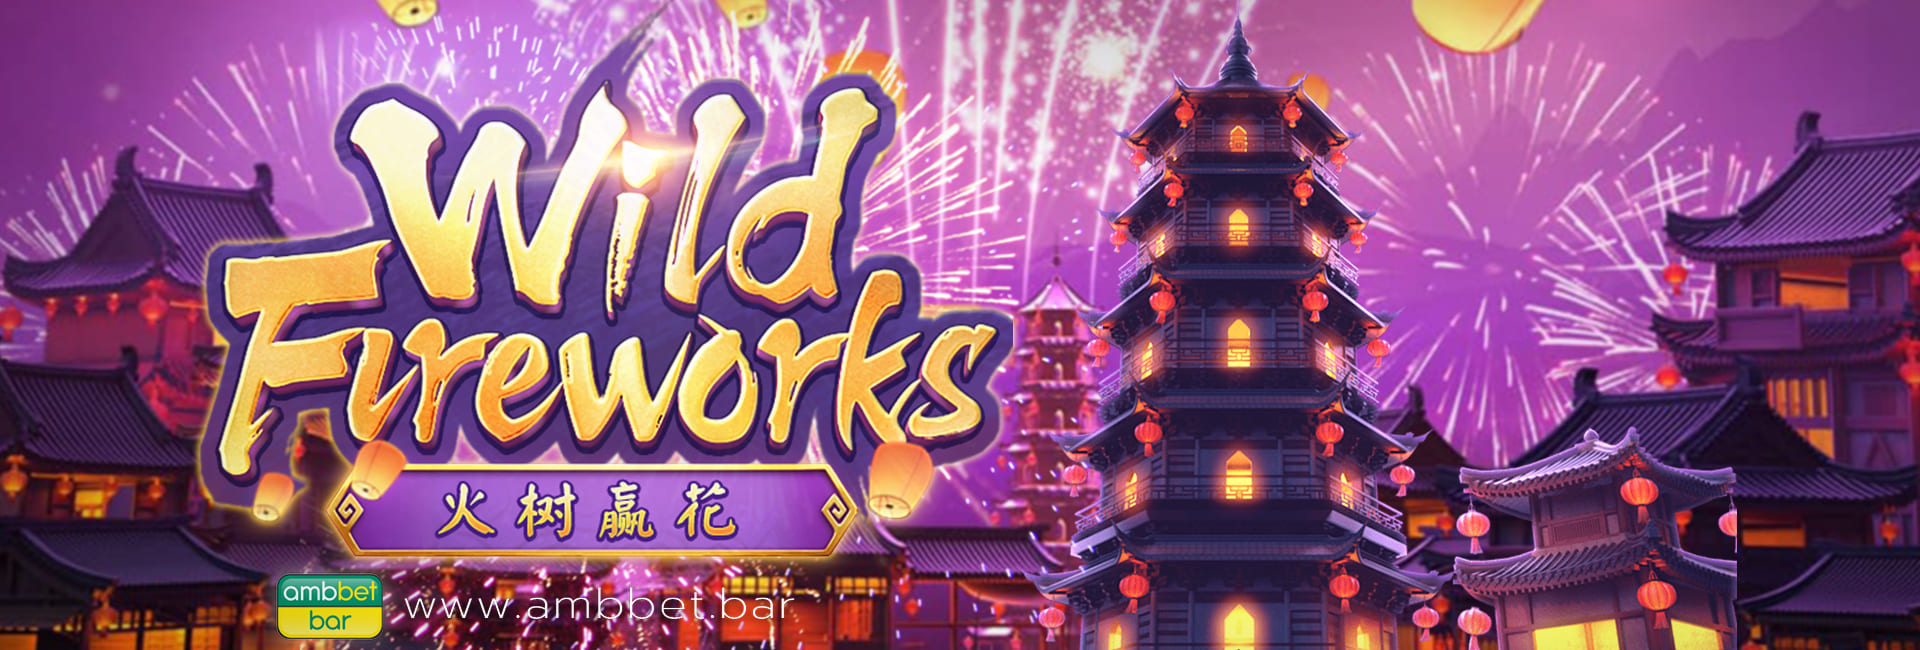 Wild Fireworks banner